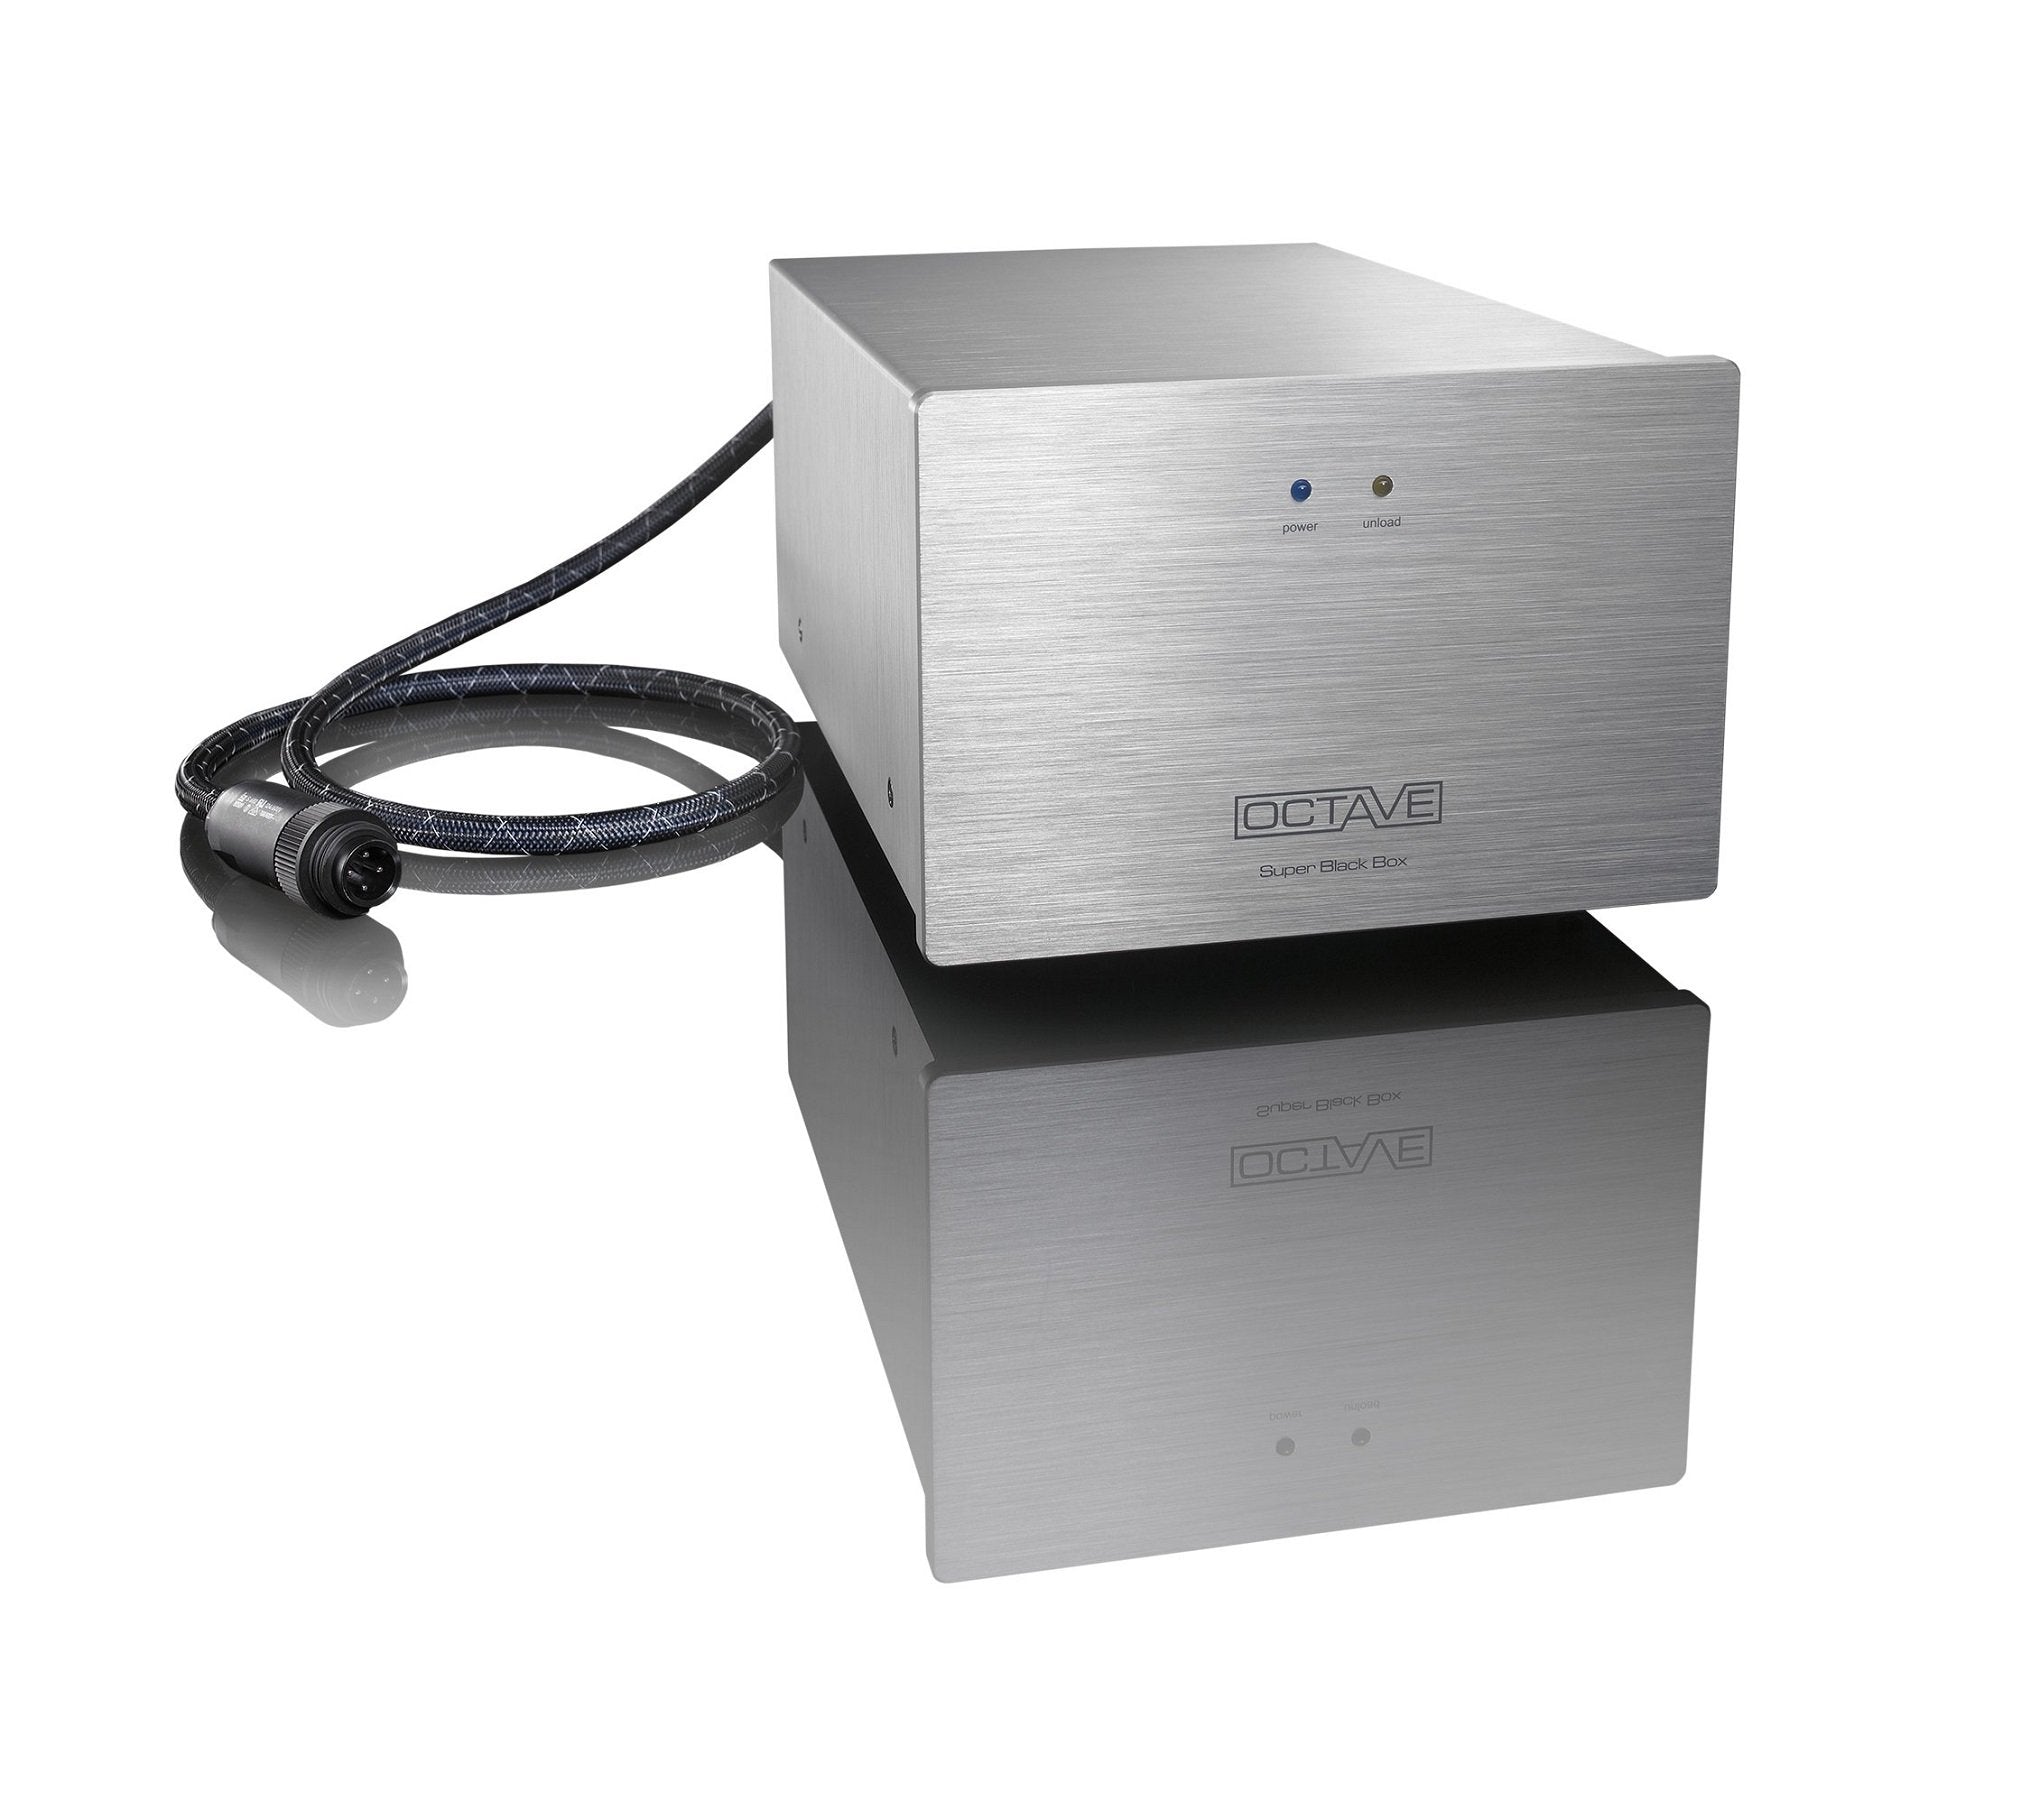 Octave Audio Black Box & Super Black Box, Capacitance Modules